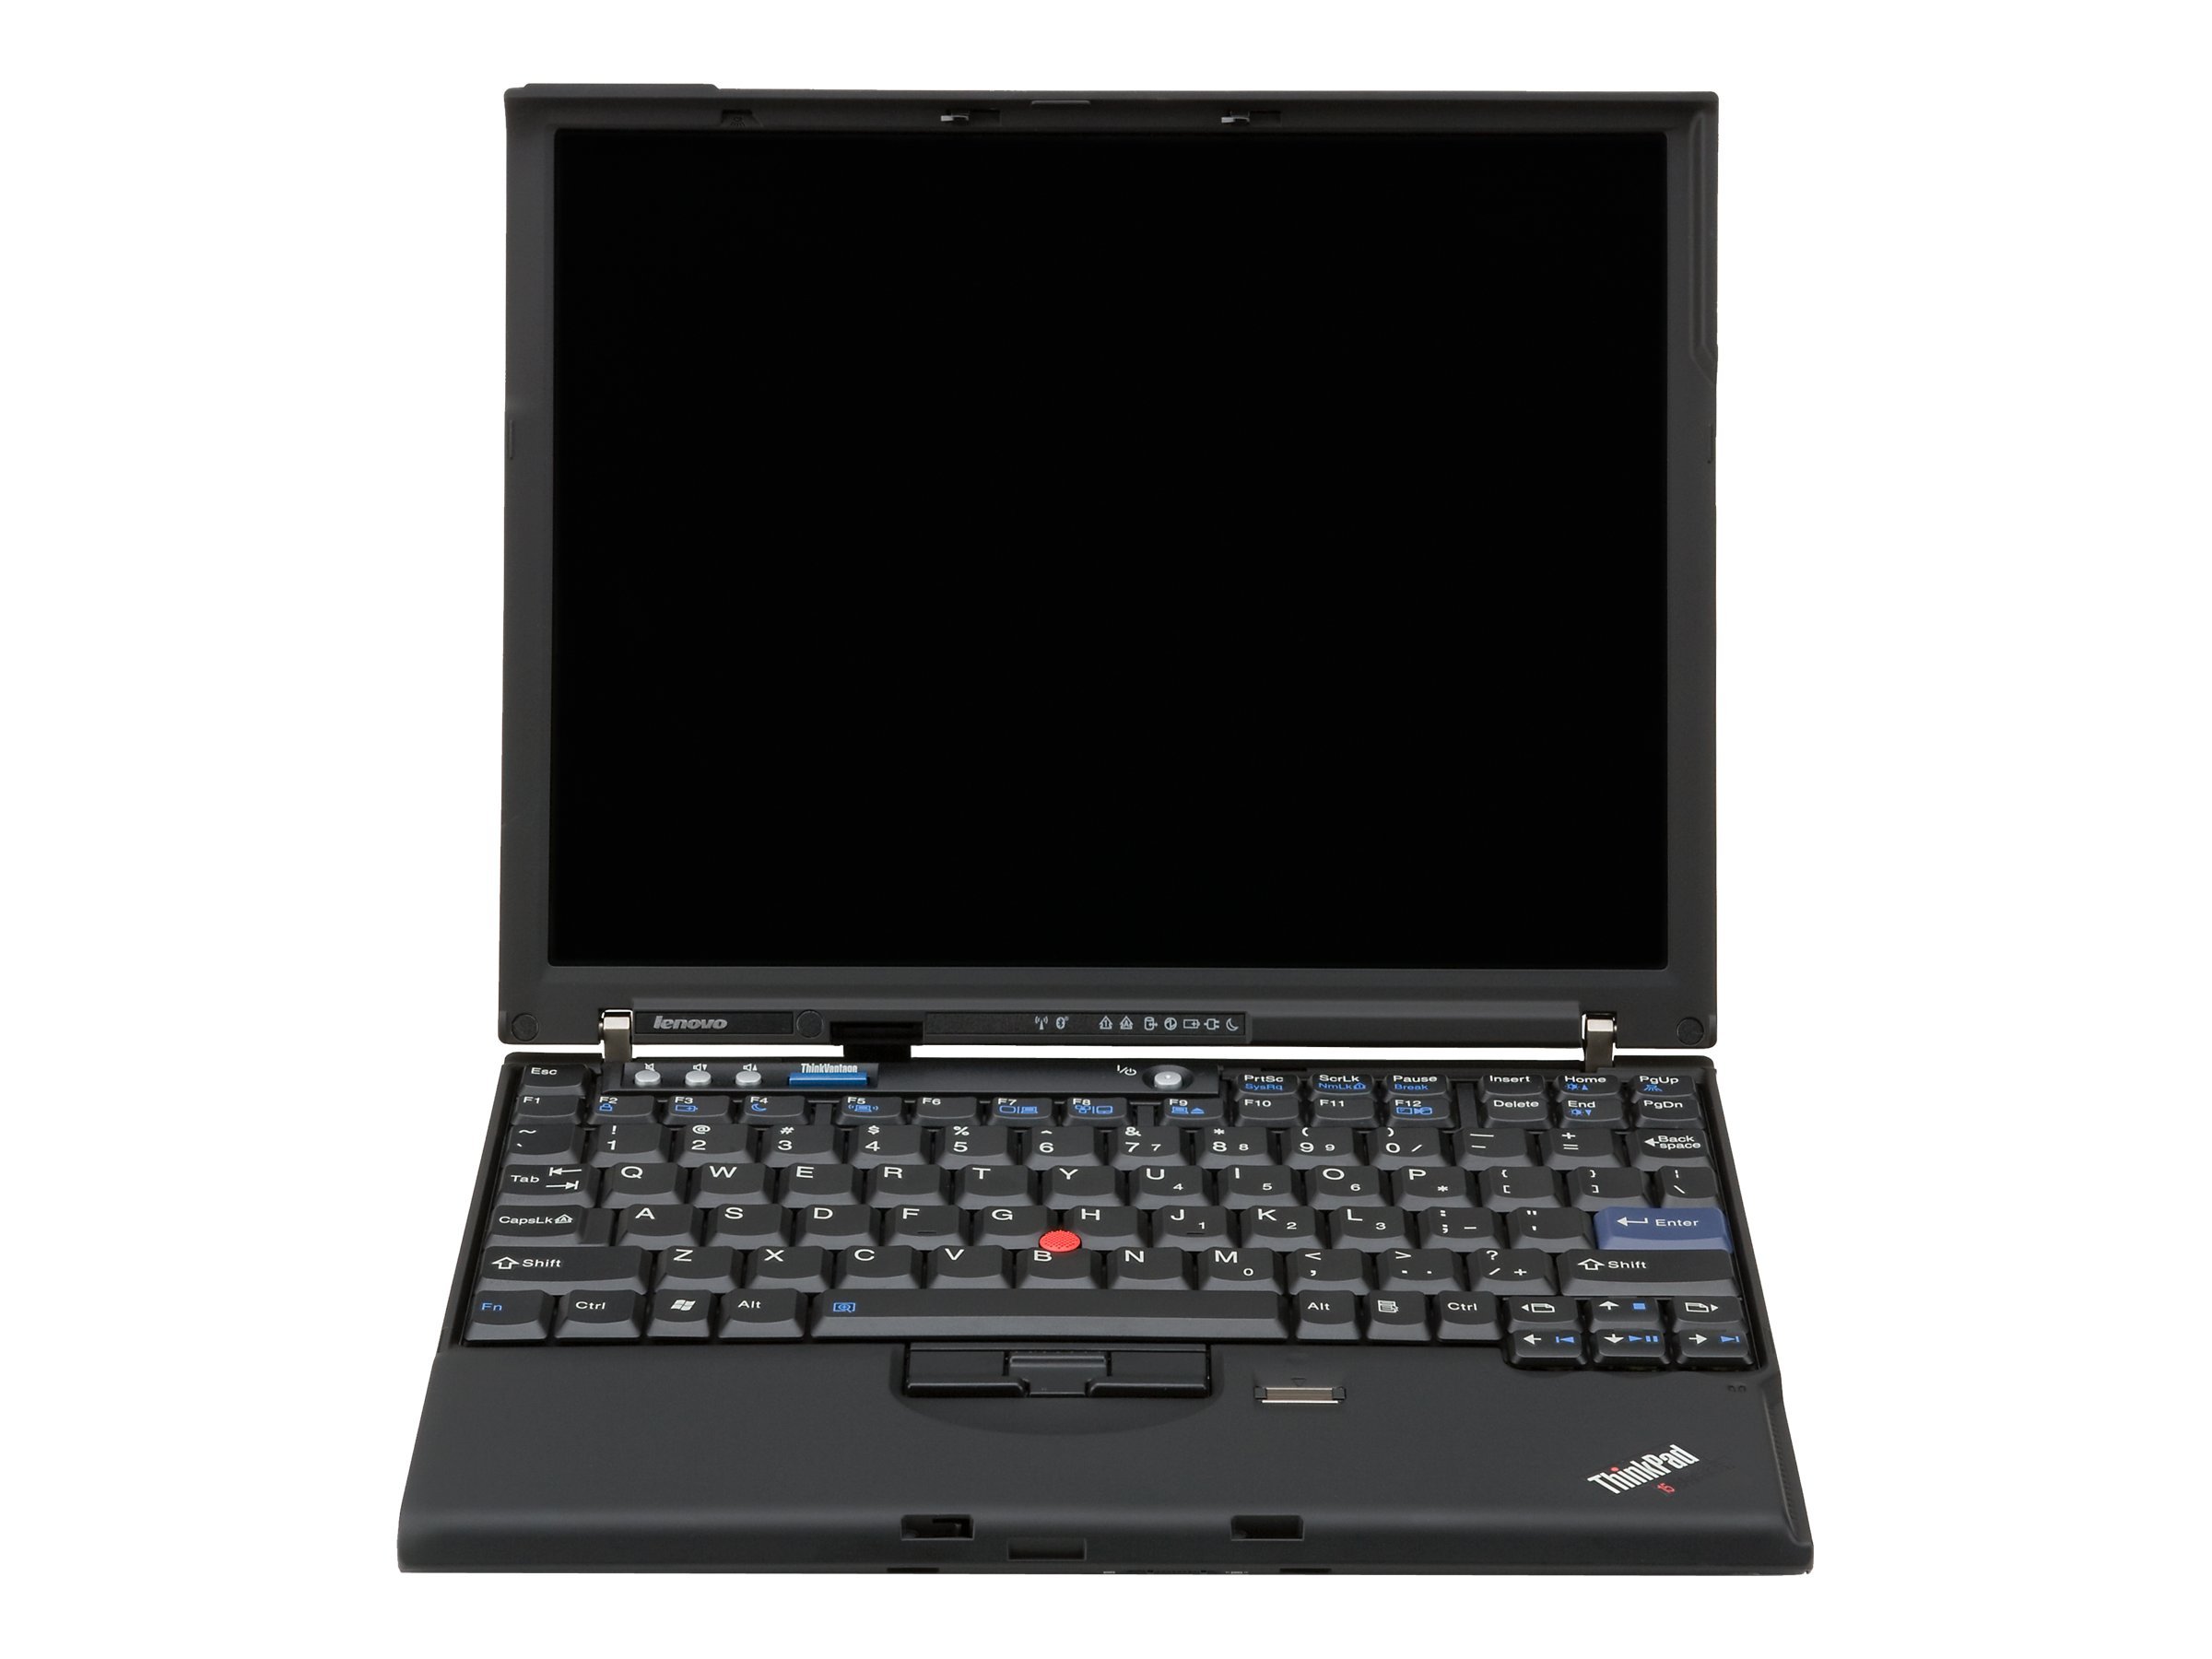 Lenovo ThinkPad X61s (7666)